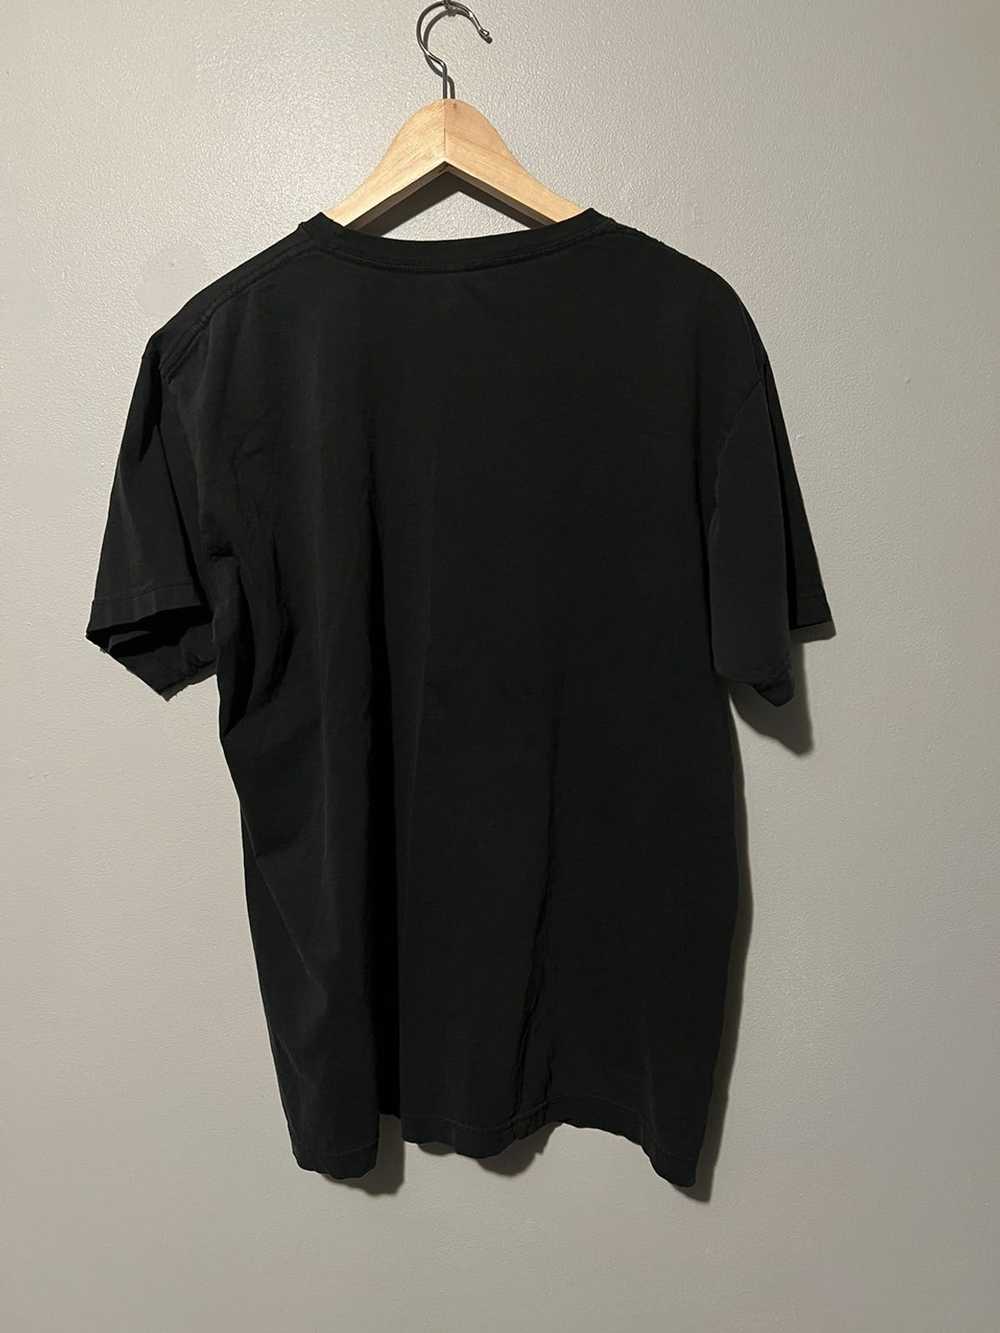 Streetwear 2000s Led Zepplin shirt - image 3